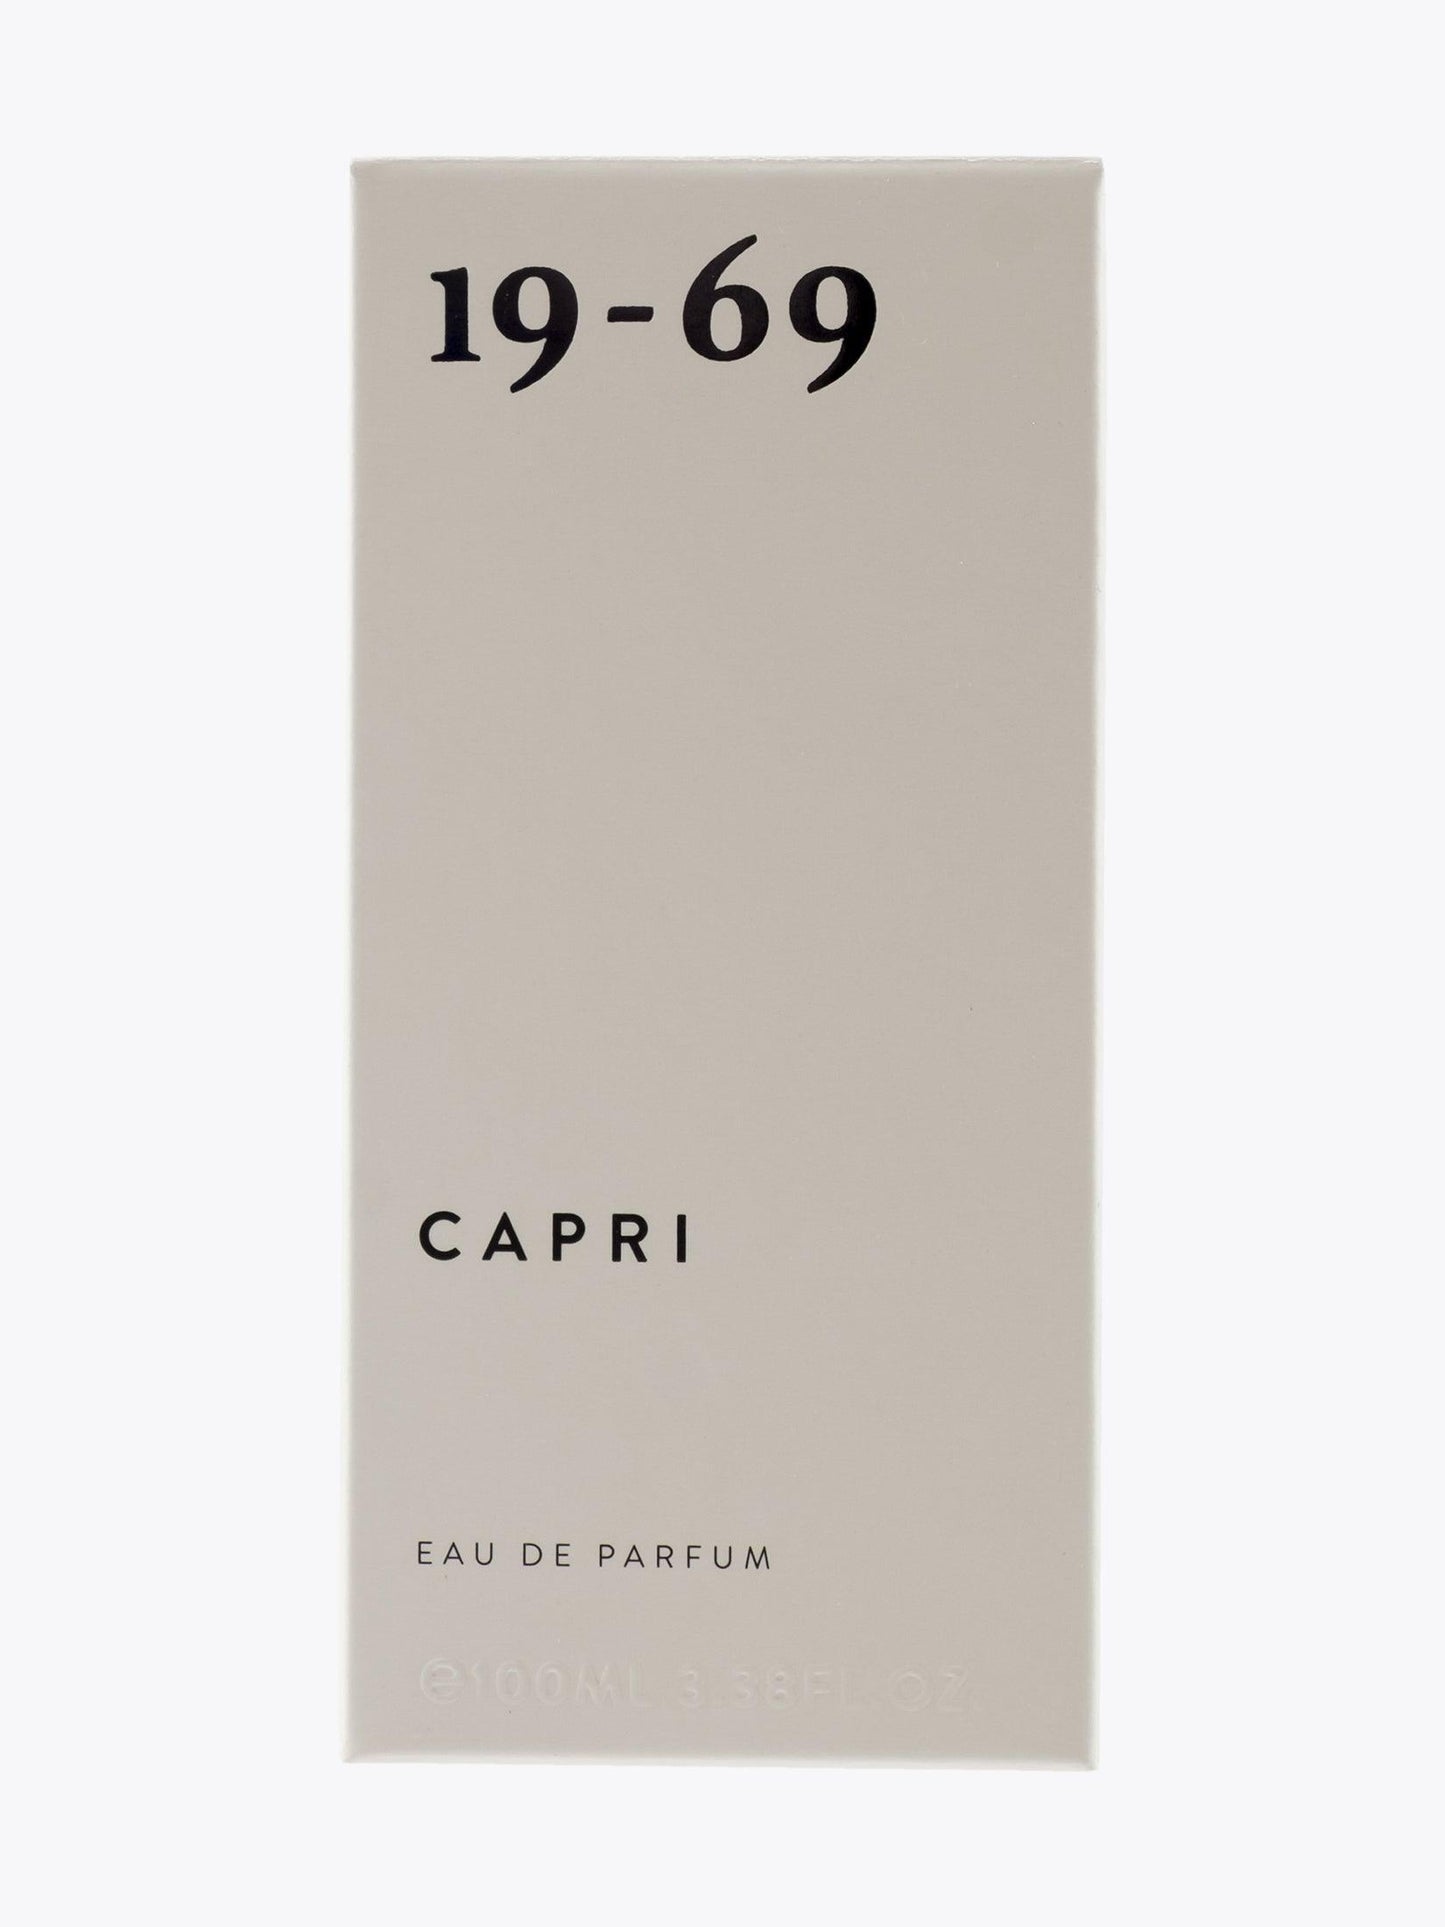 19-69 Capri Eau de Parfum 100ml - APODEP.com